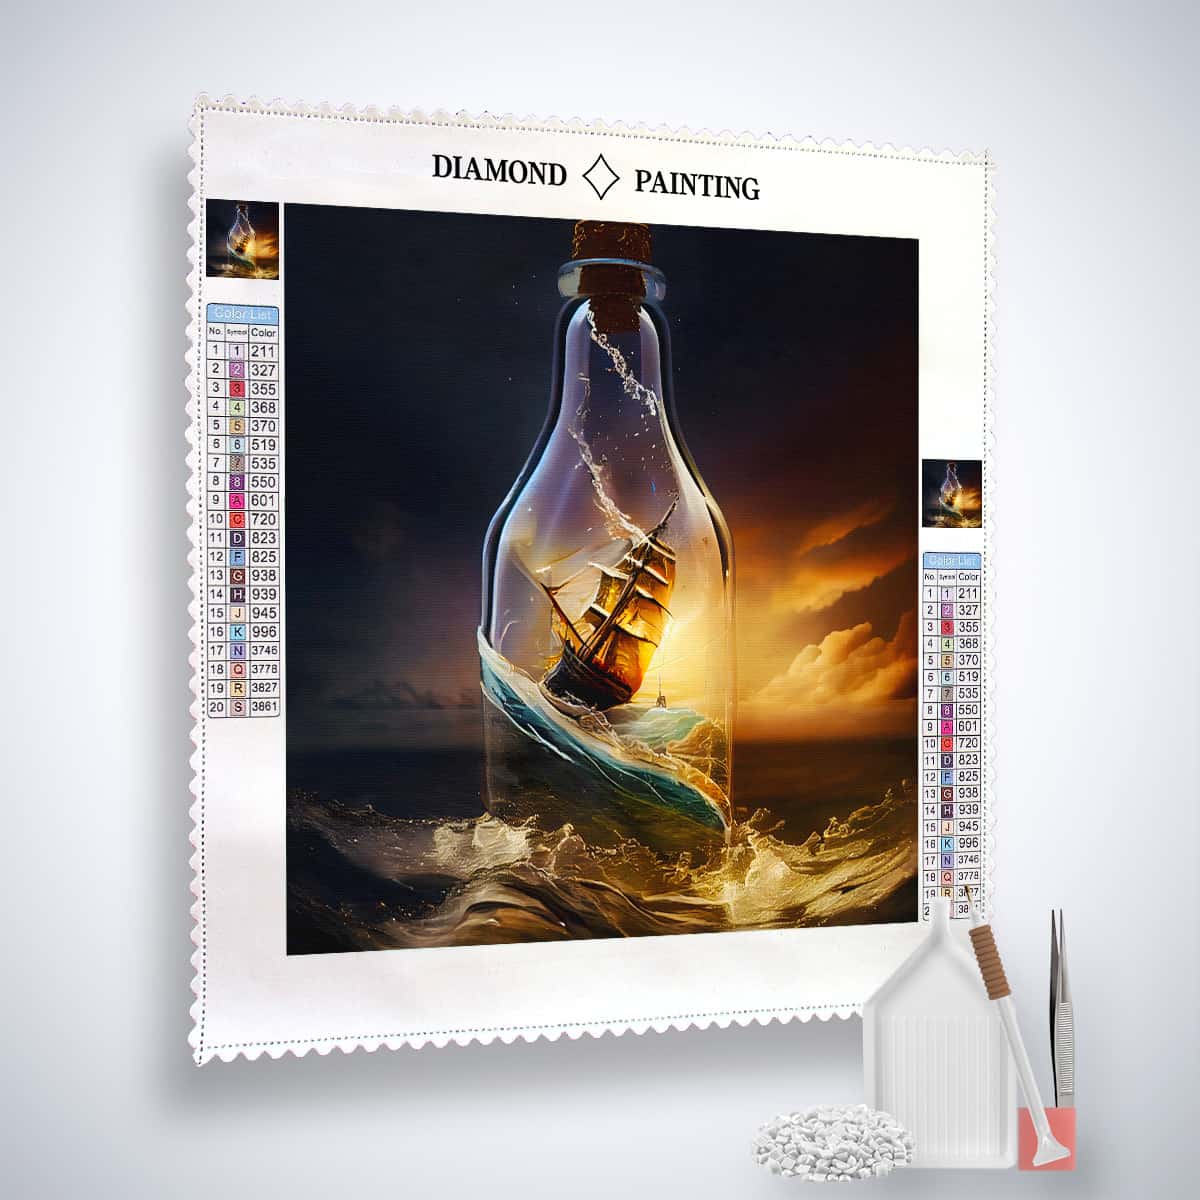 Diamond Painting - Schiff im Glas - gedruckt in Ultra-HD - Blumen, Neu eingetroffen, Quadratisch, Schiff, Schiffe